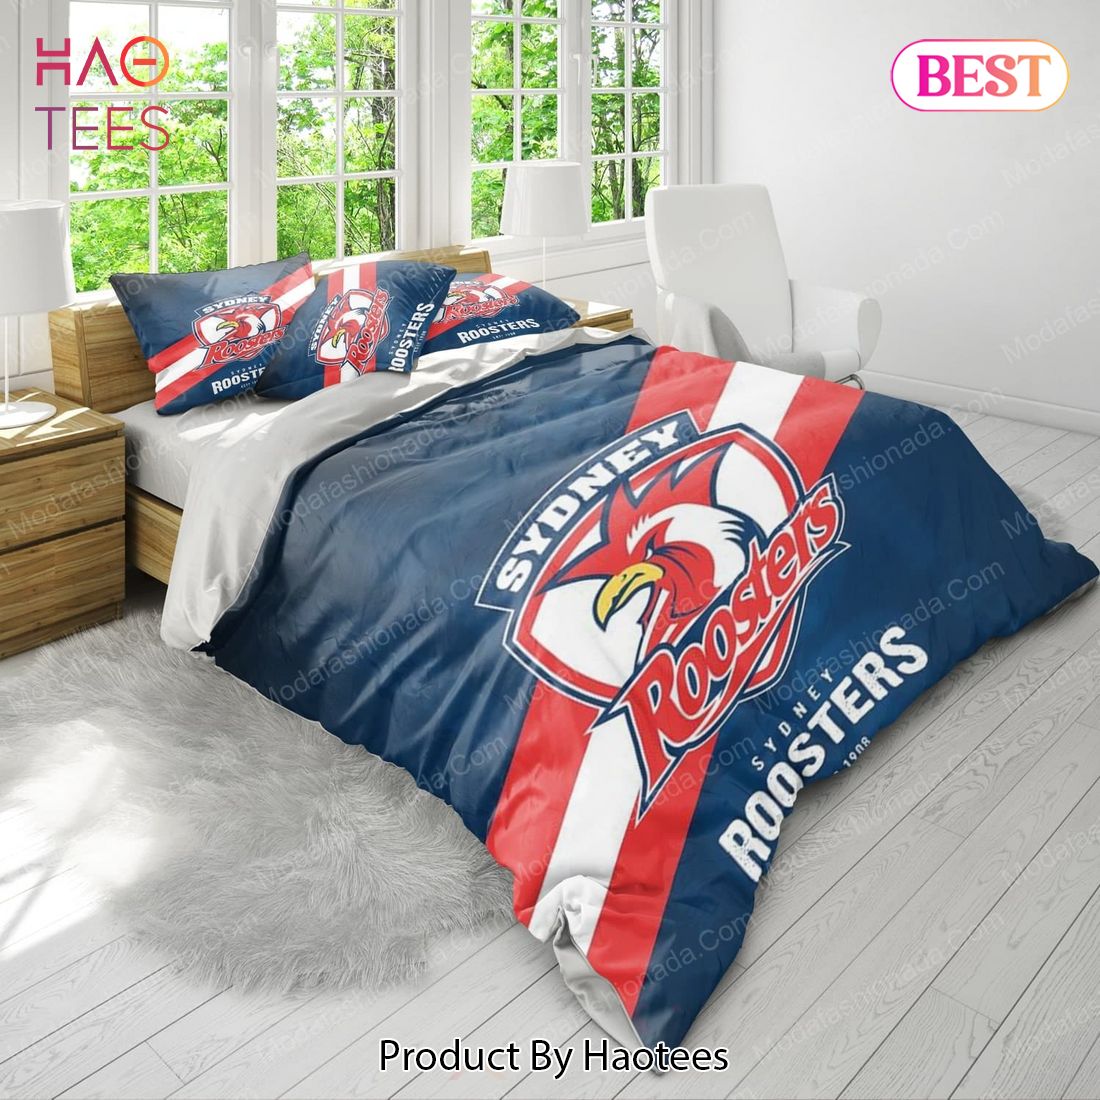 Buy Sydney Roosters Logo Bedding Sets 01 Bed Sets, Bedroom Sets, Comforter Sets, Duvet Cover, Bedspread